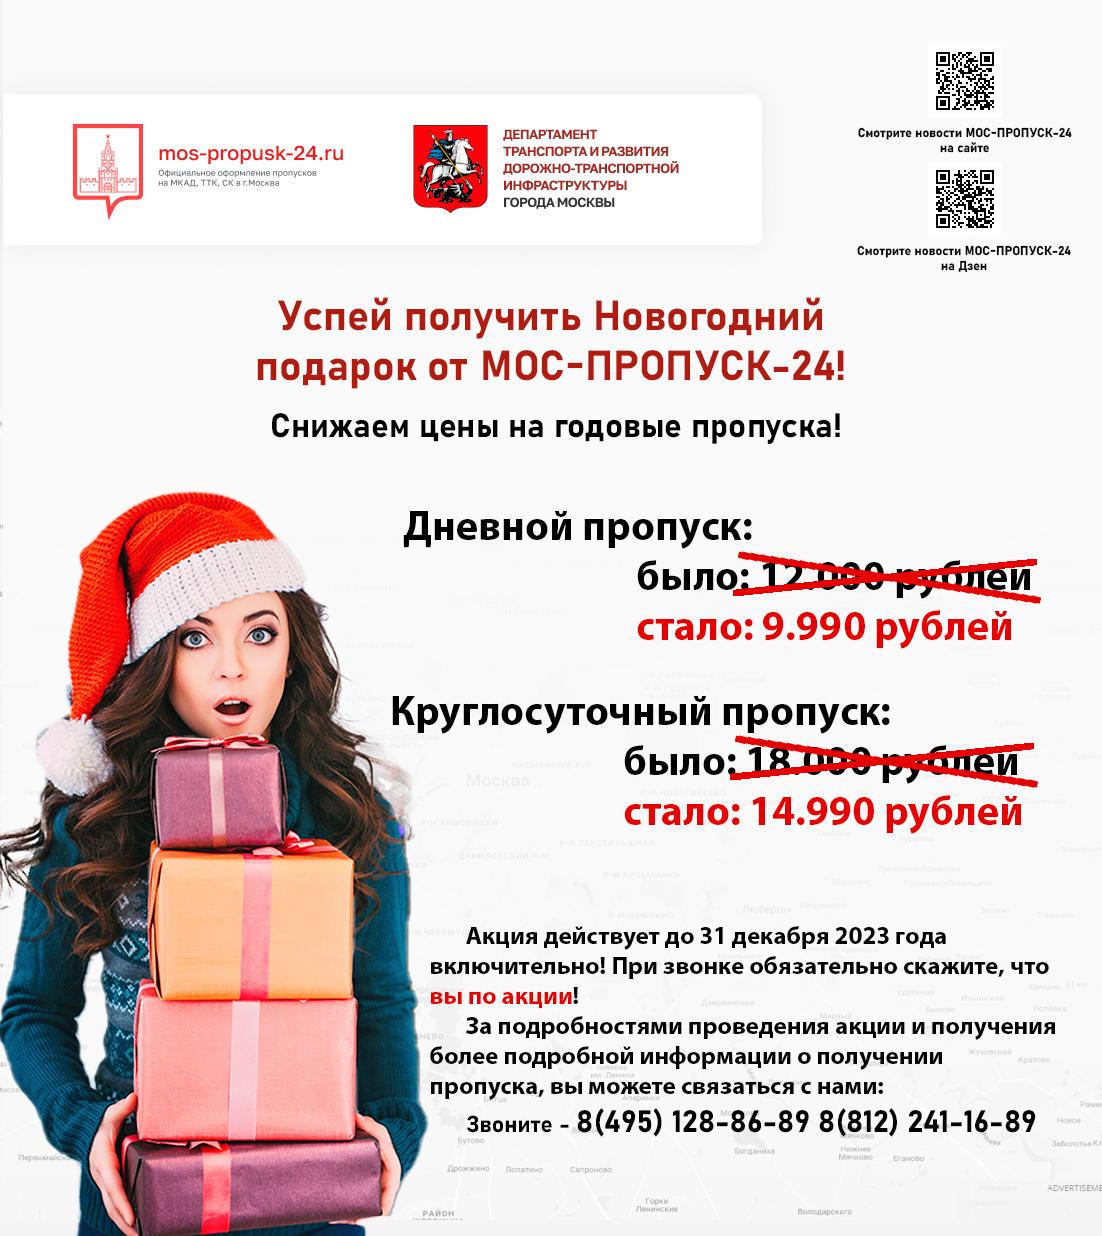 Успей получить Новогодний подарок от МОС-ПРОПУСК-24!